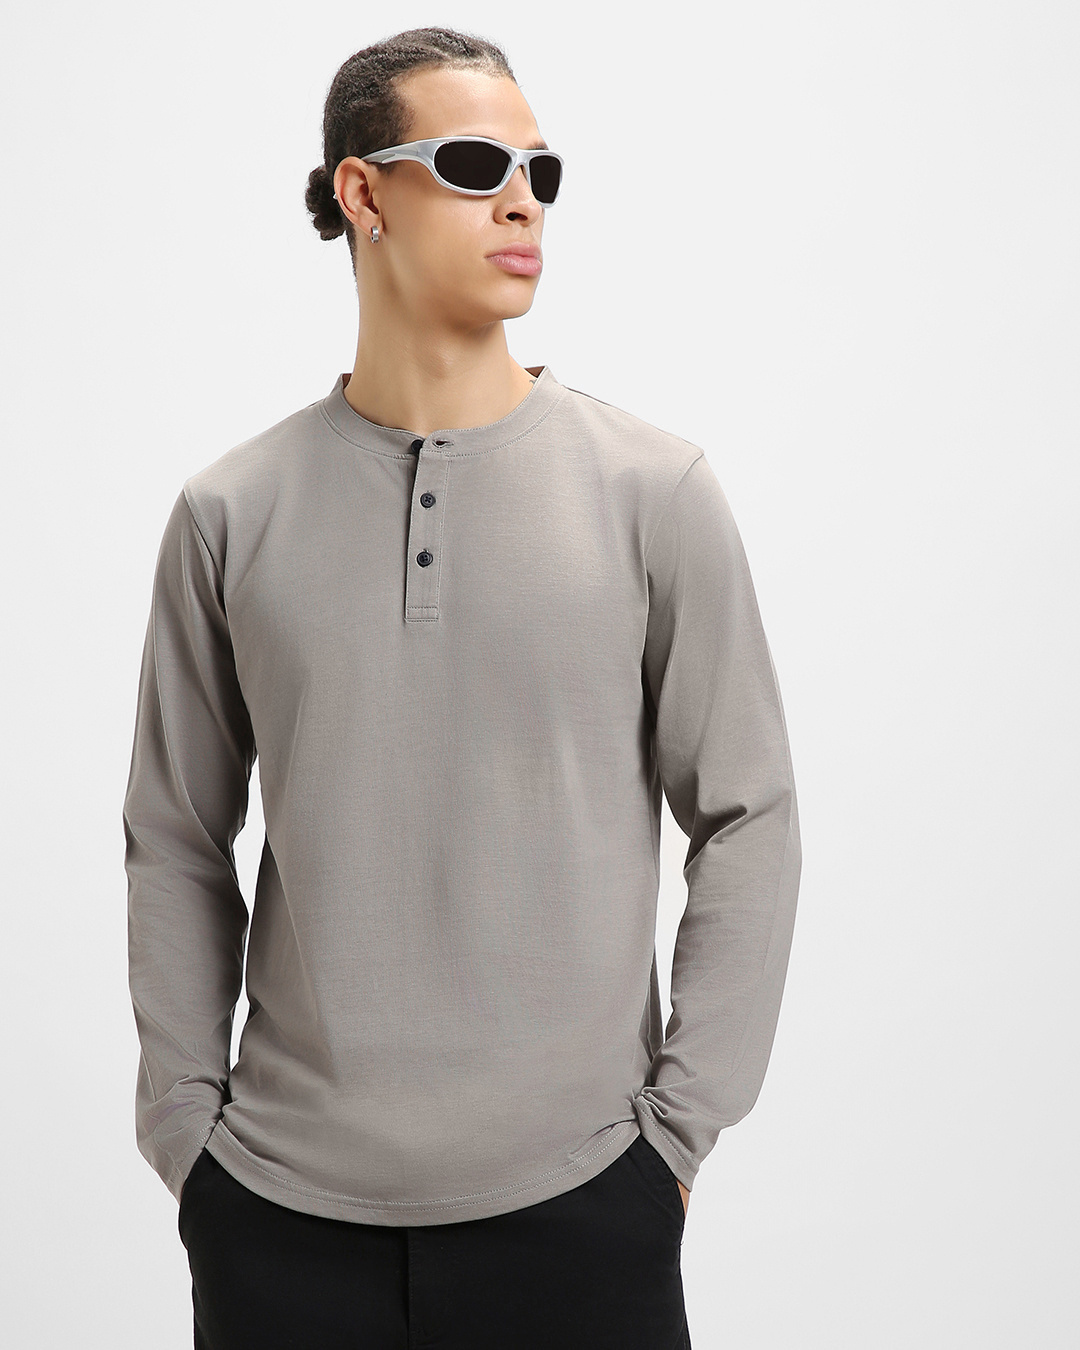 Buy Men's Grey Oversized T-shirt Online at Bewakoof